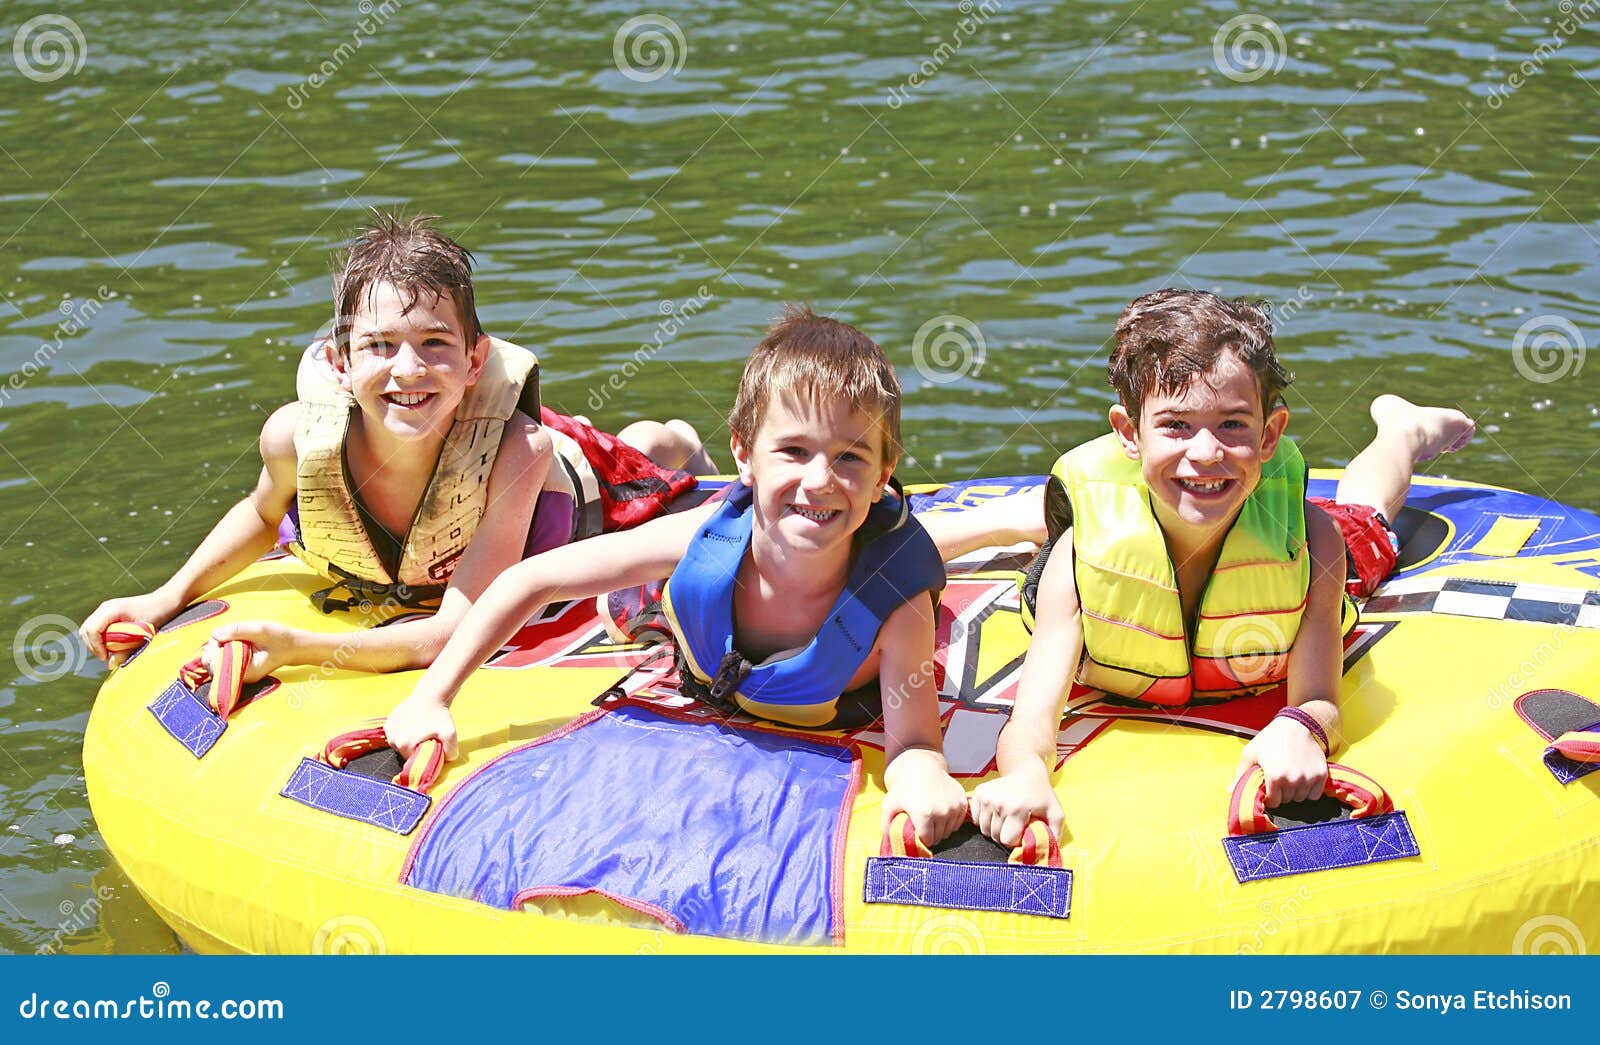 three boys tubing